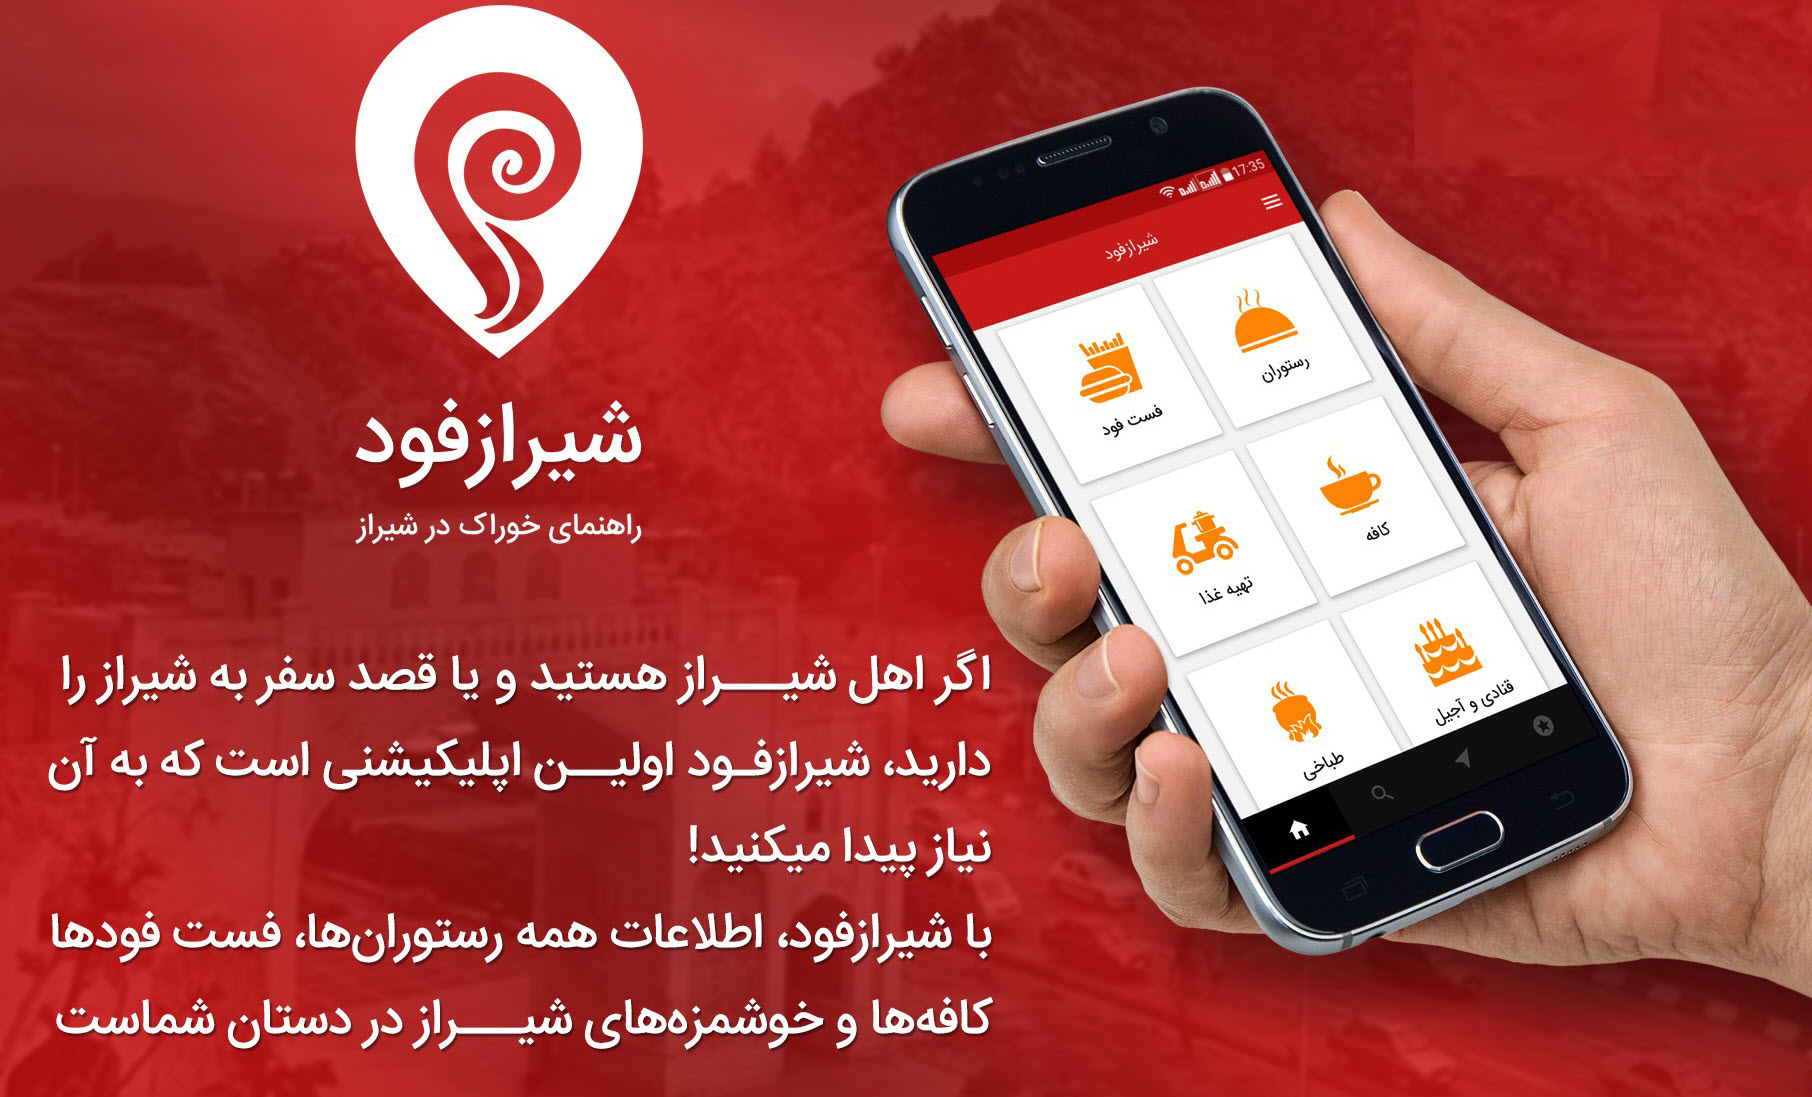 دانلود برنامه شیرازفود - راهنمای خوراک در شیراز نسخه v1.3.1 برای اندروید